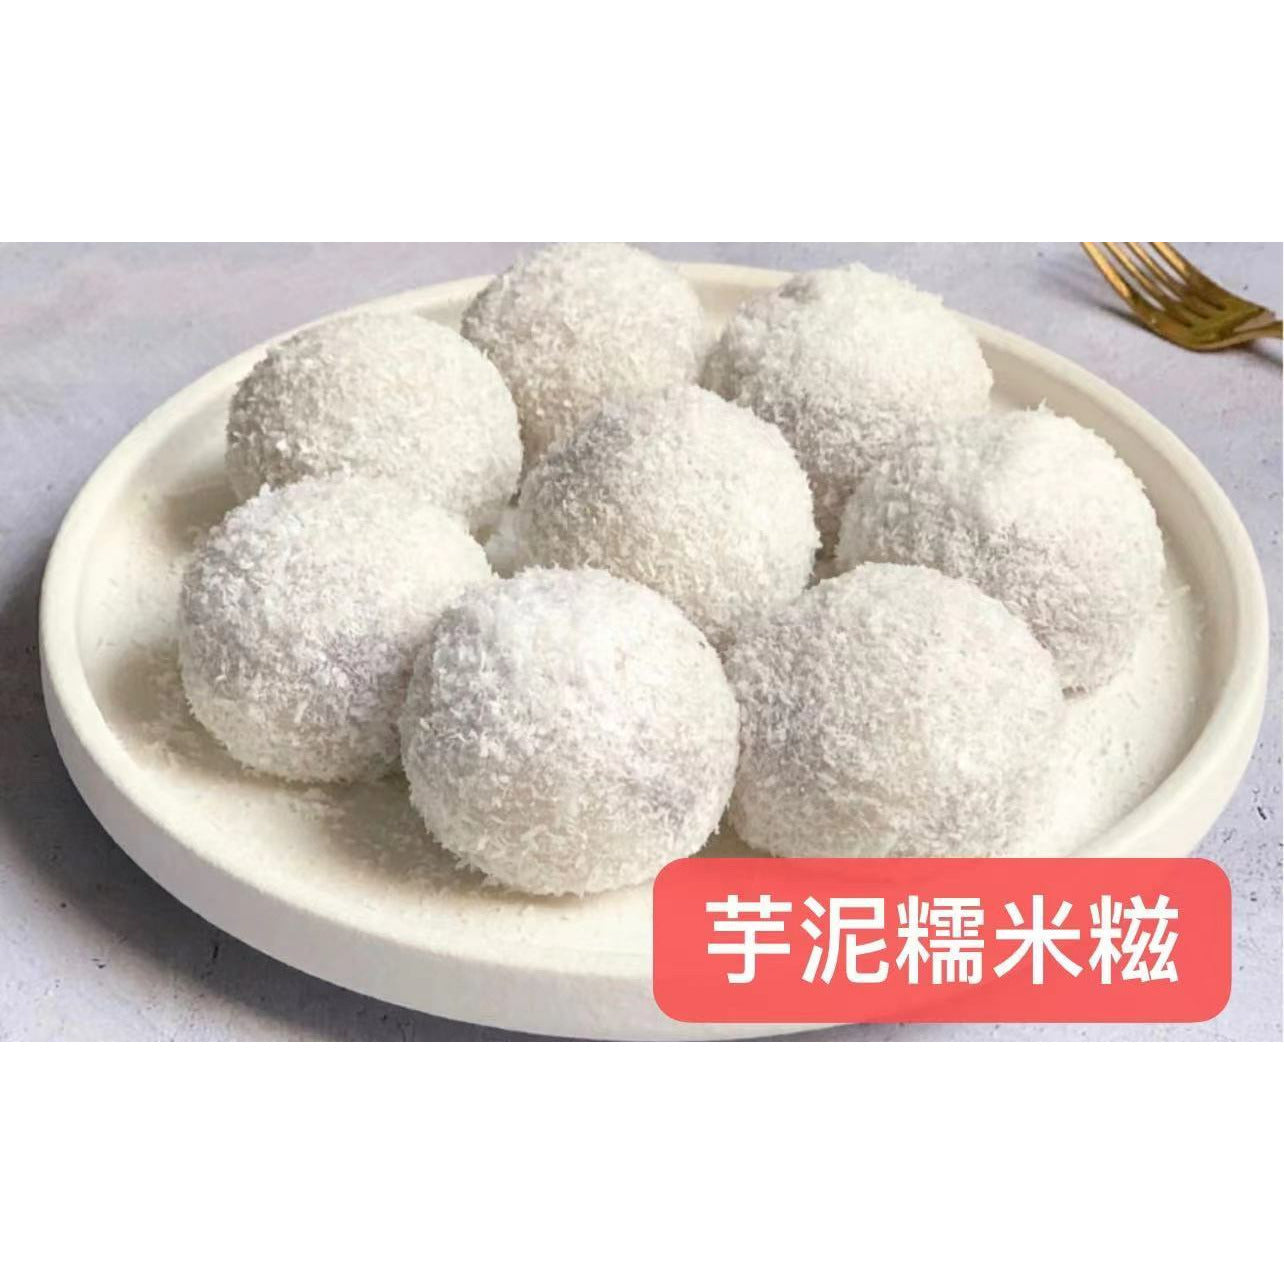 9-Taro paste glutinous rice cakes (2 pcs per serving)